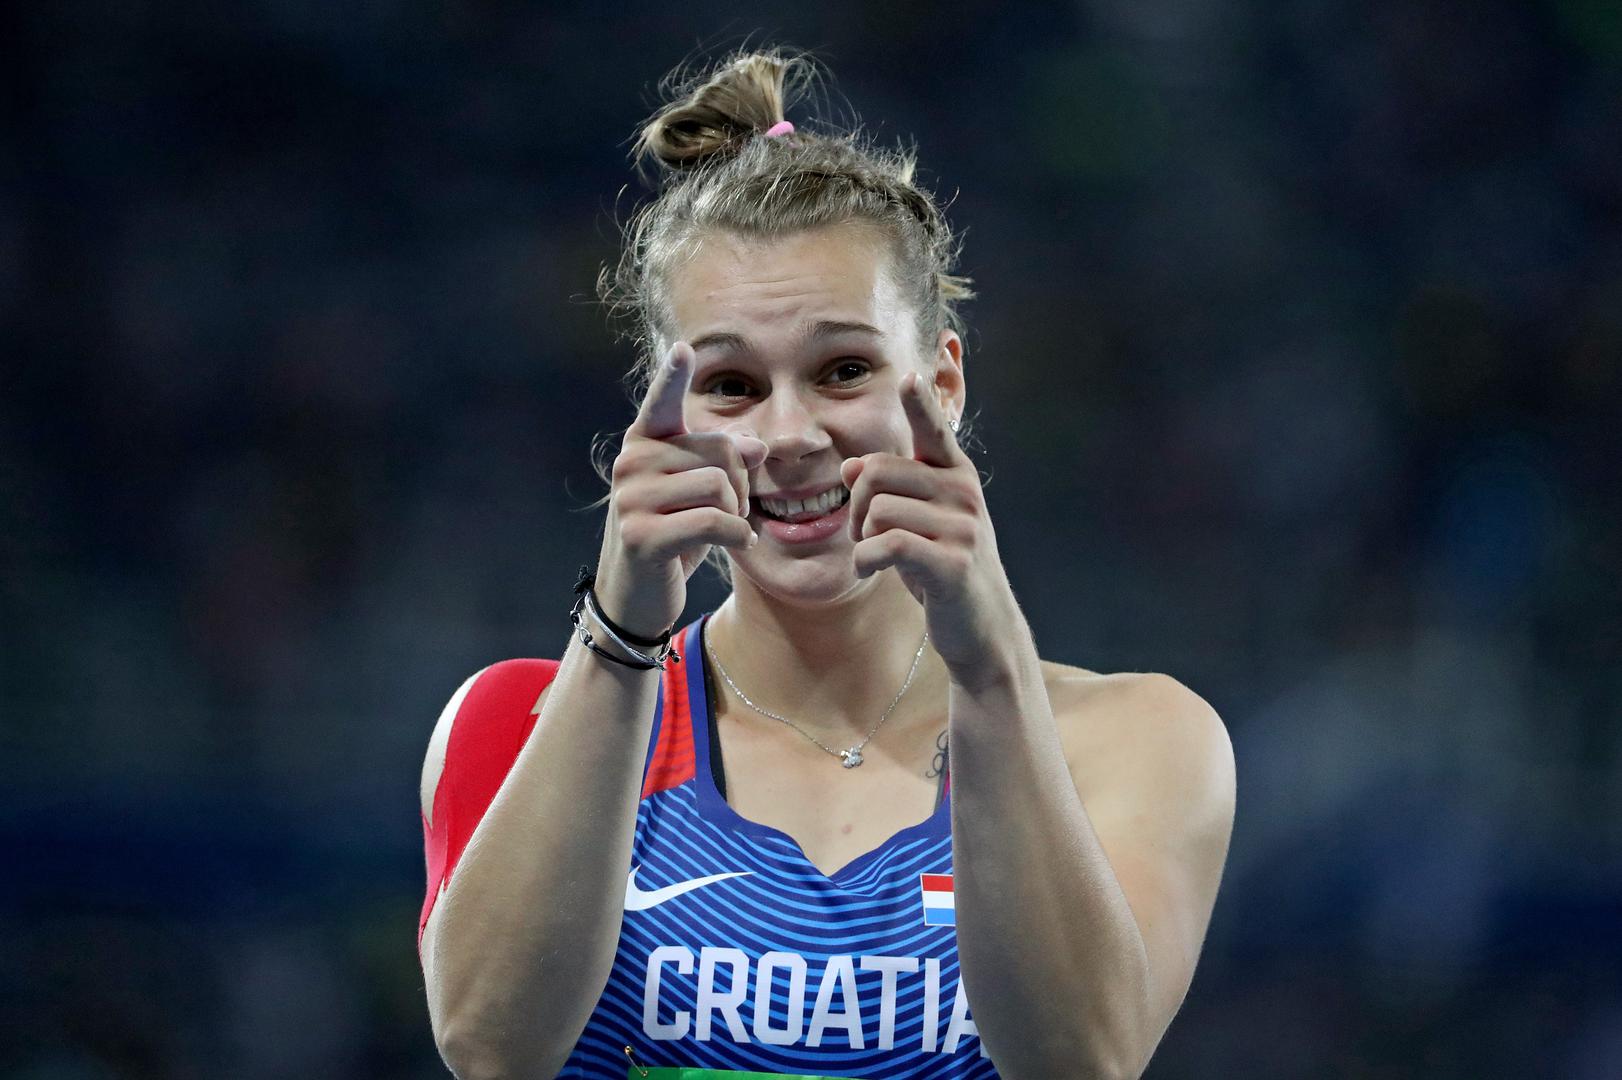 2. Sara Kolak – hrvatska bačacica koplja koja je prva prebacila 60m i vlasnica je rekorda (68,43 m)na Olimpijskim igrama u Riju osvaja zlatnu medalju.